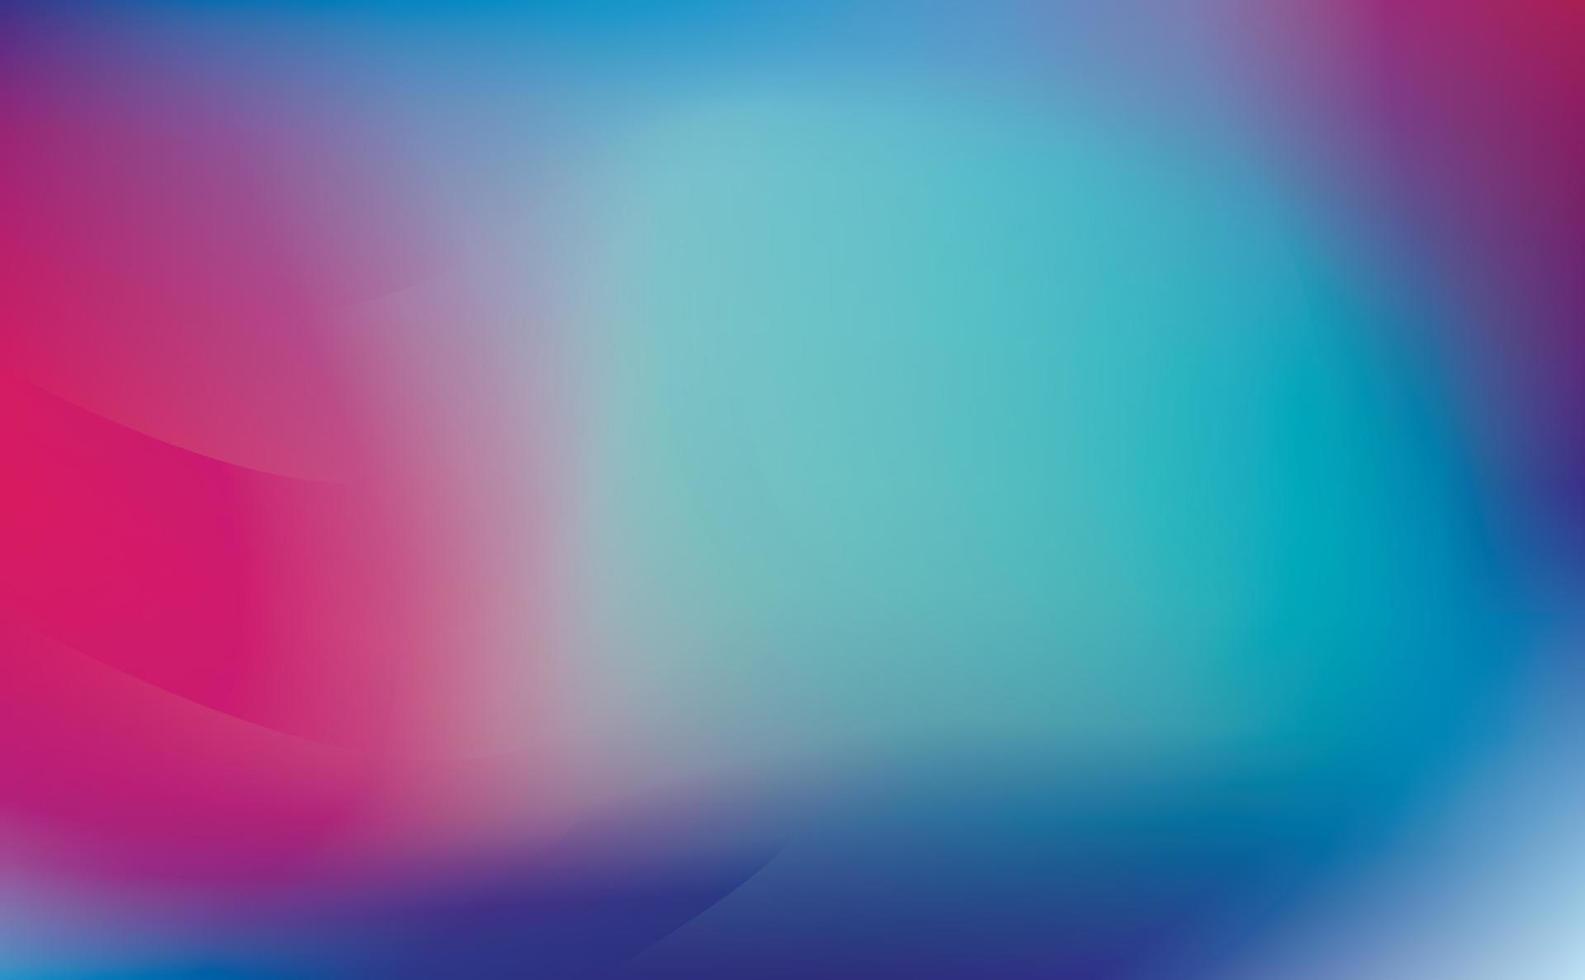 rosa abstracto, turquesa, azul violeta patrón de color borroso, fondo degradado. copie el espacio ilustración vectorial vector